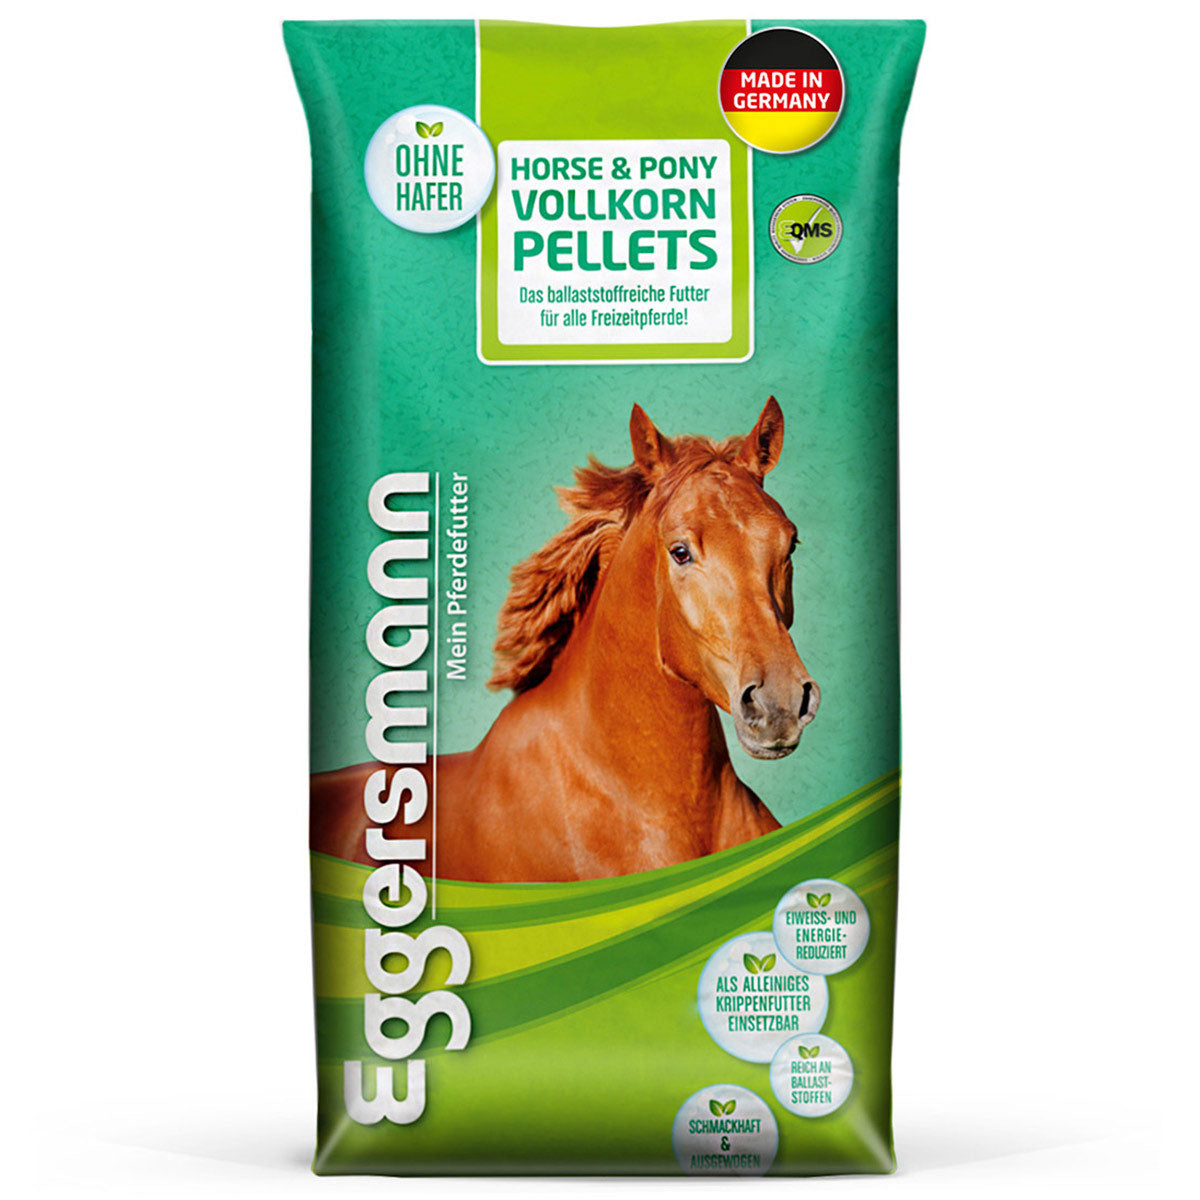 Horse & Pony Vollkorn Pellets 25 kg